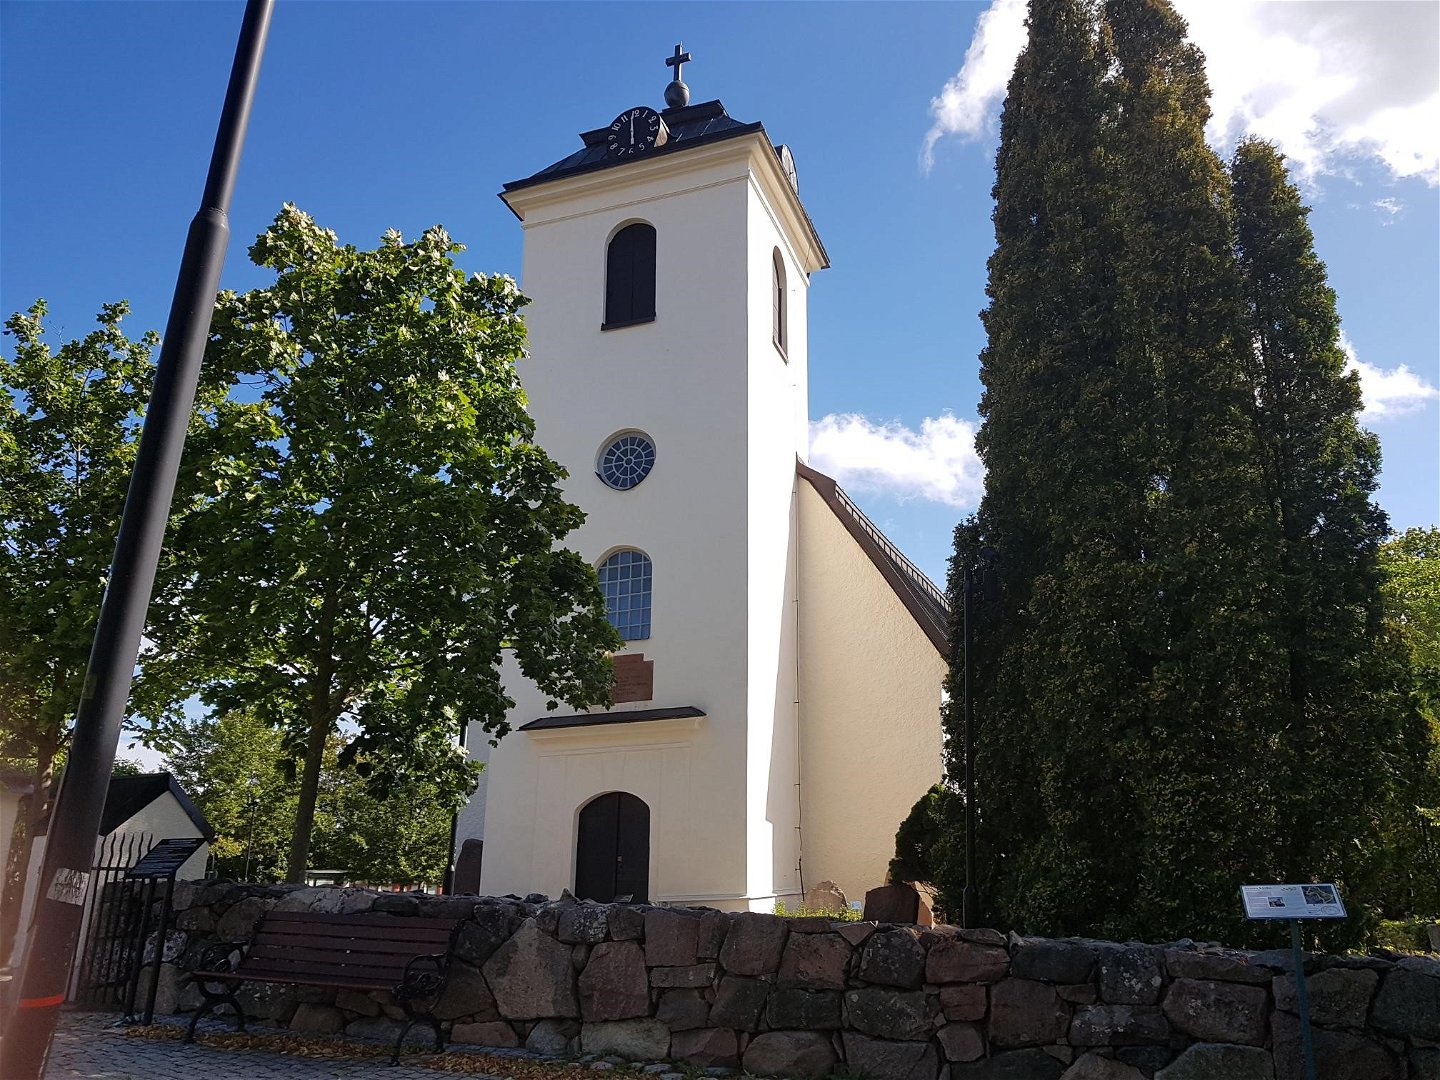 Fresta kyrka som är från 1200-talet.